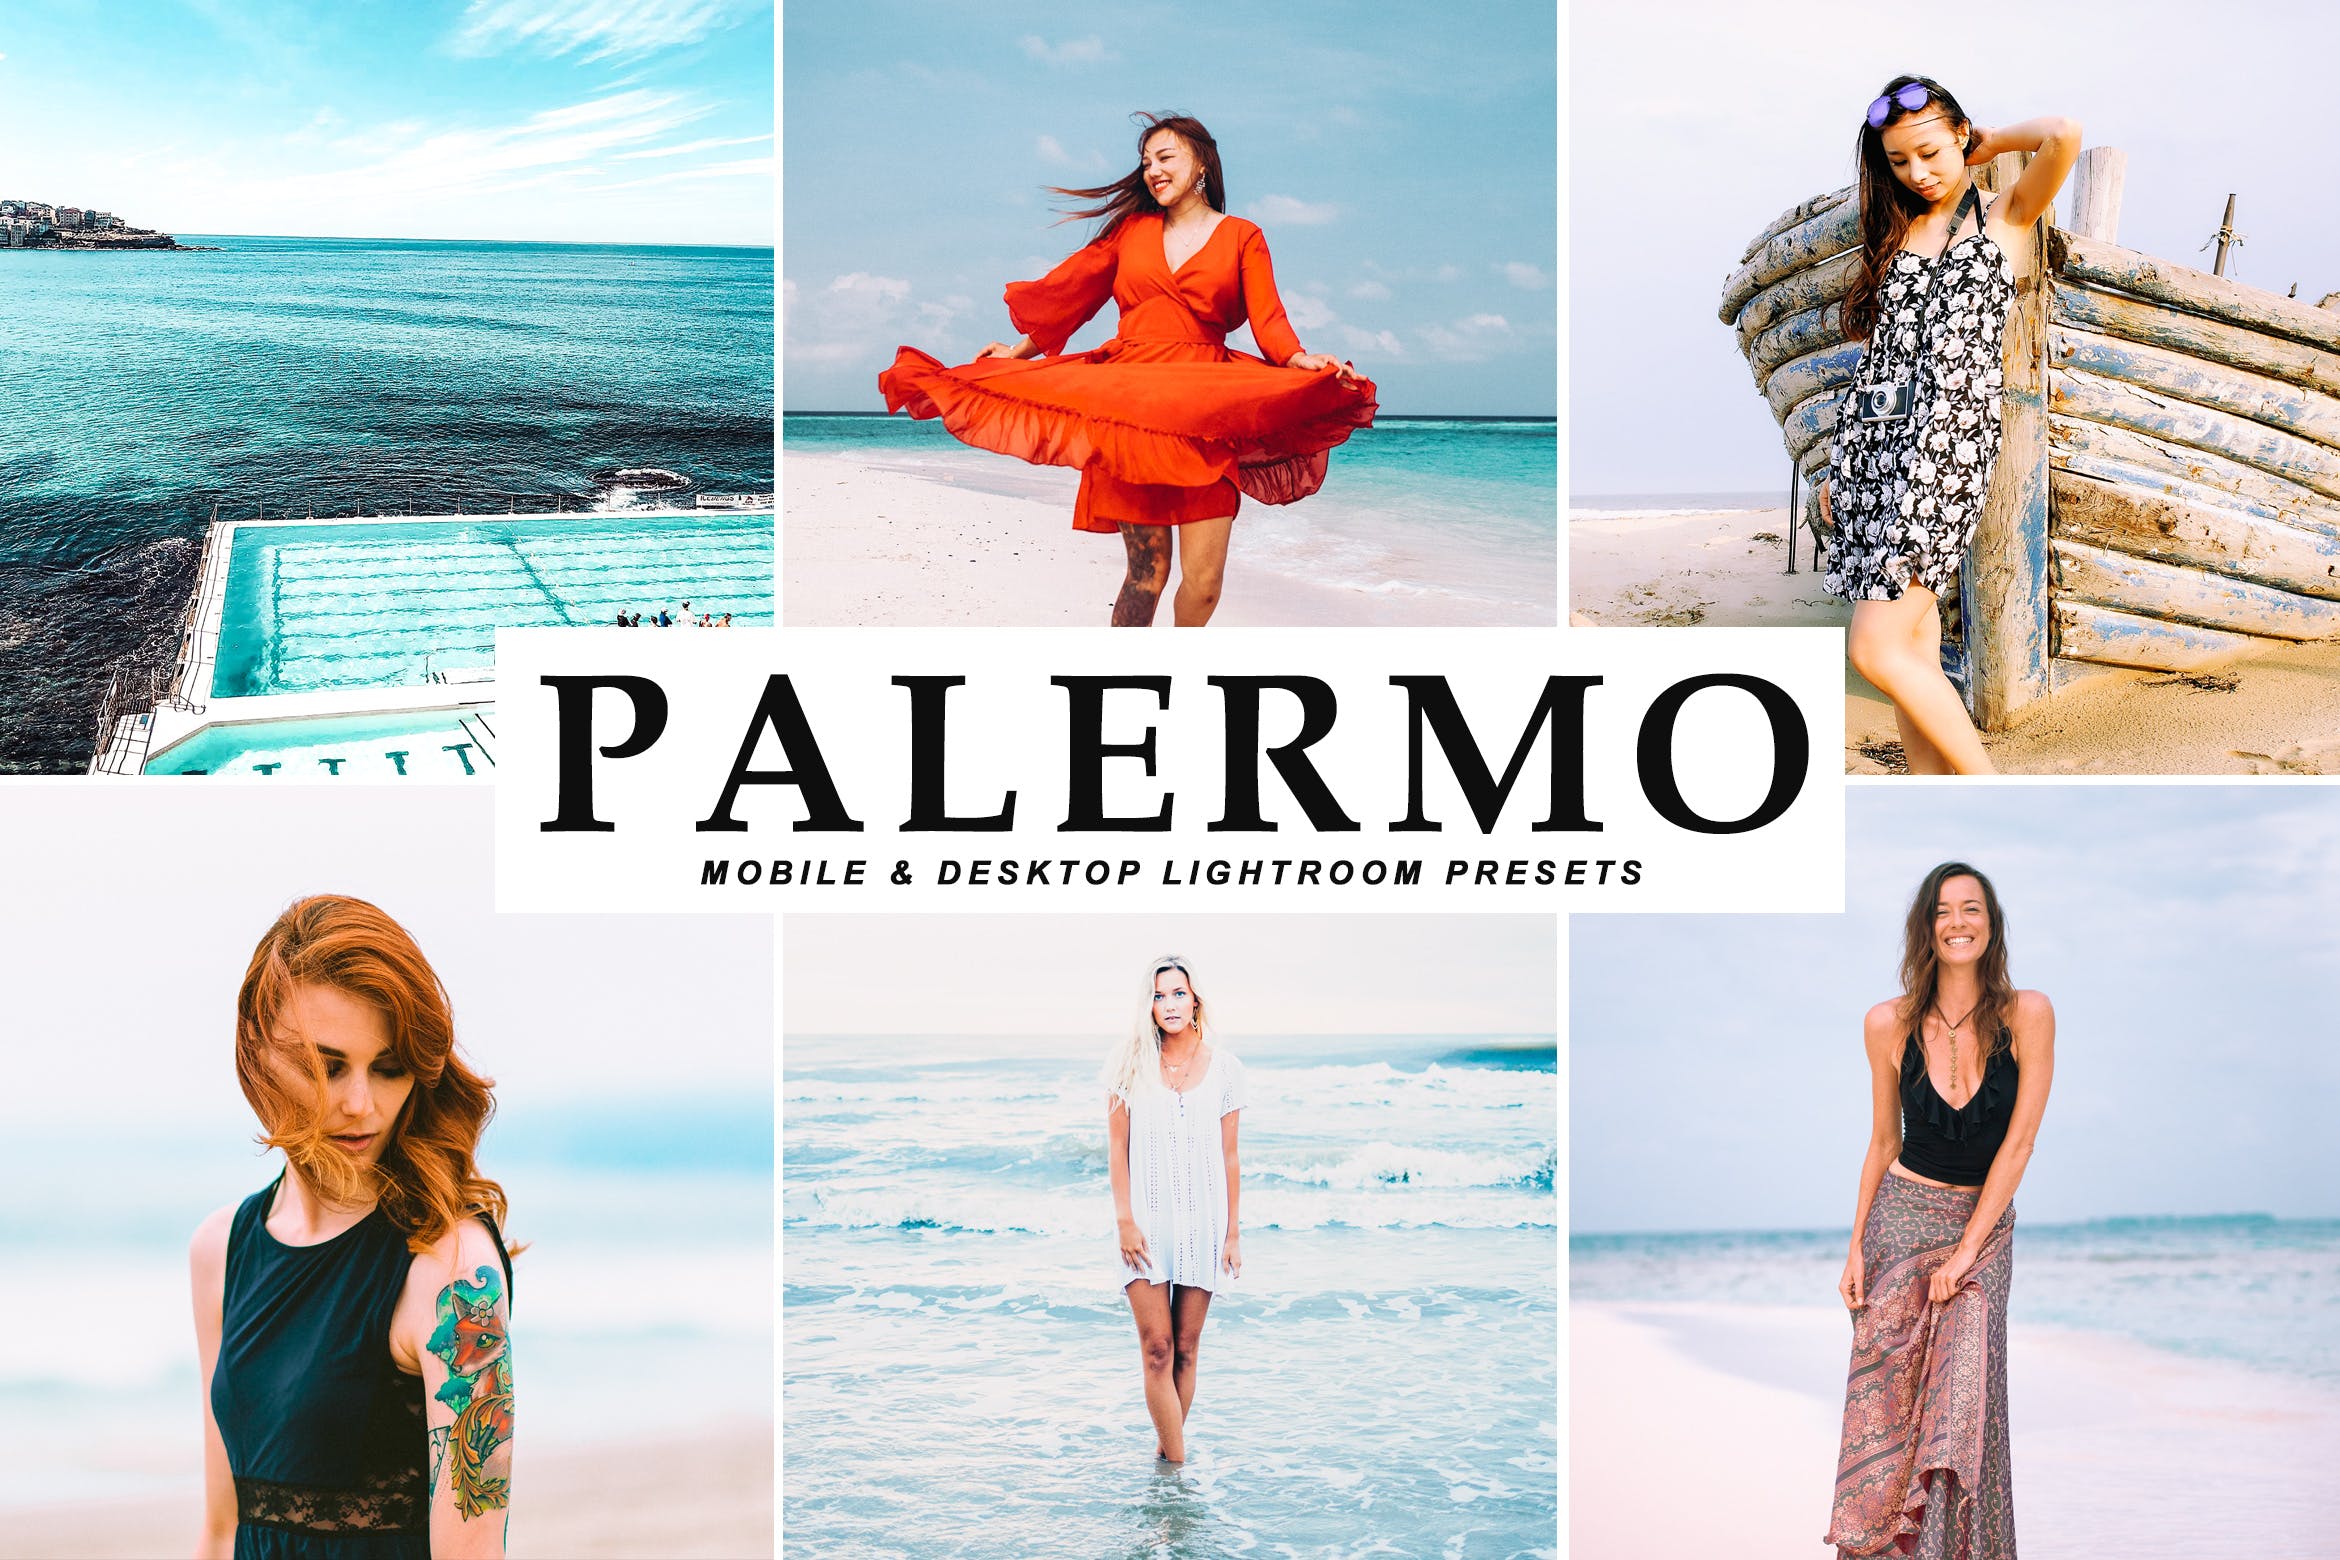 沙滩海岛阳光照片调色滤镜16图库精选LR预设 Palermo Mobile & Desktop Lightroom Presets插图